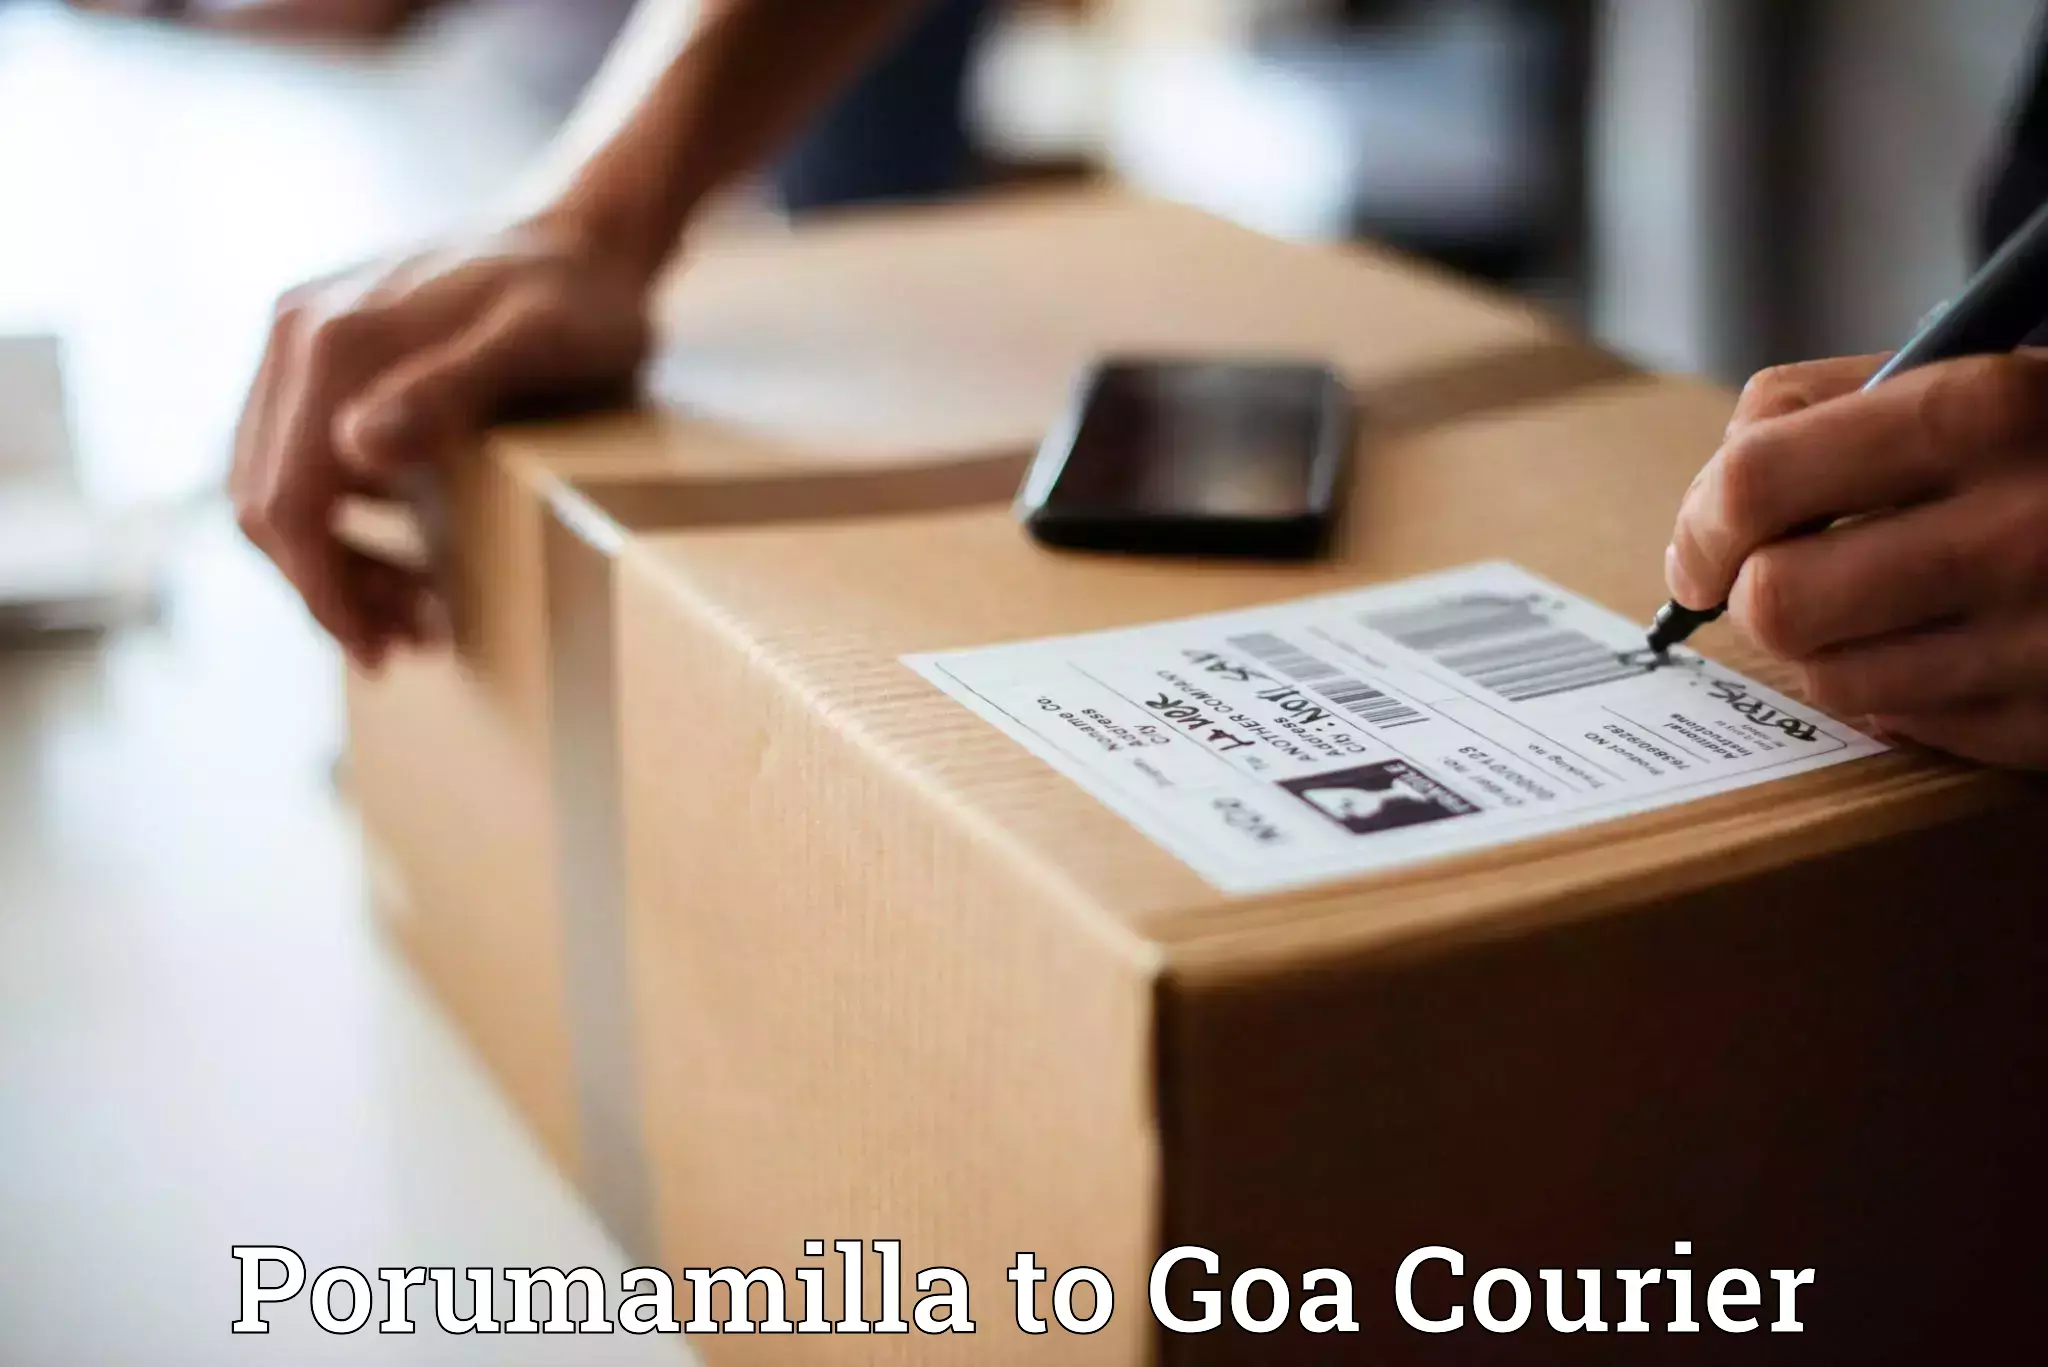 User-friendly delivery service in Porumamilla to Goa